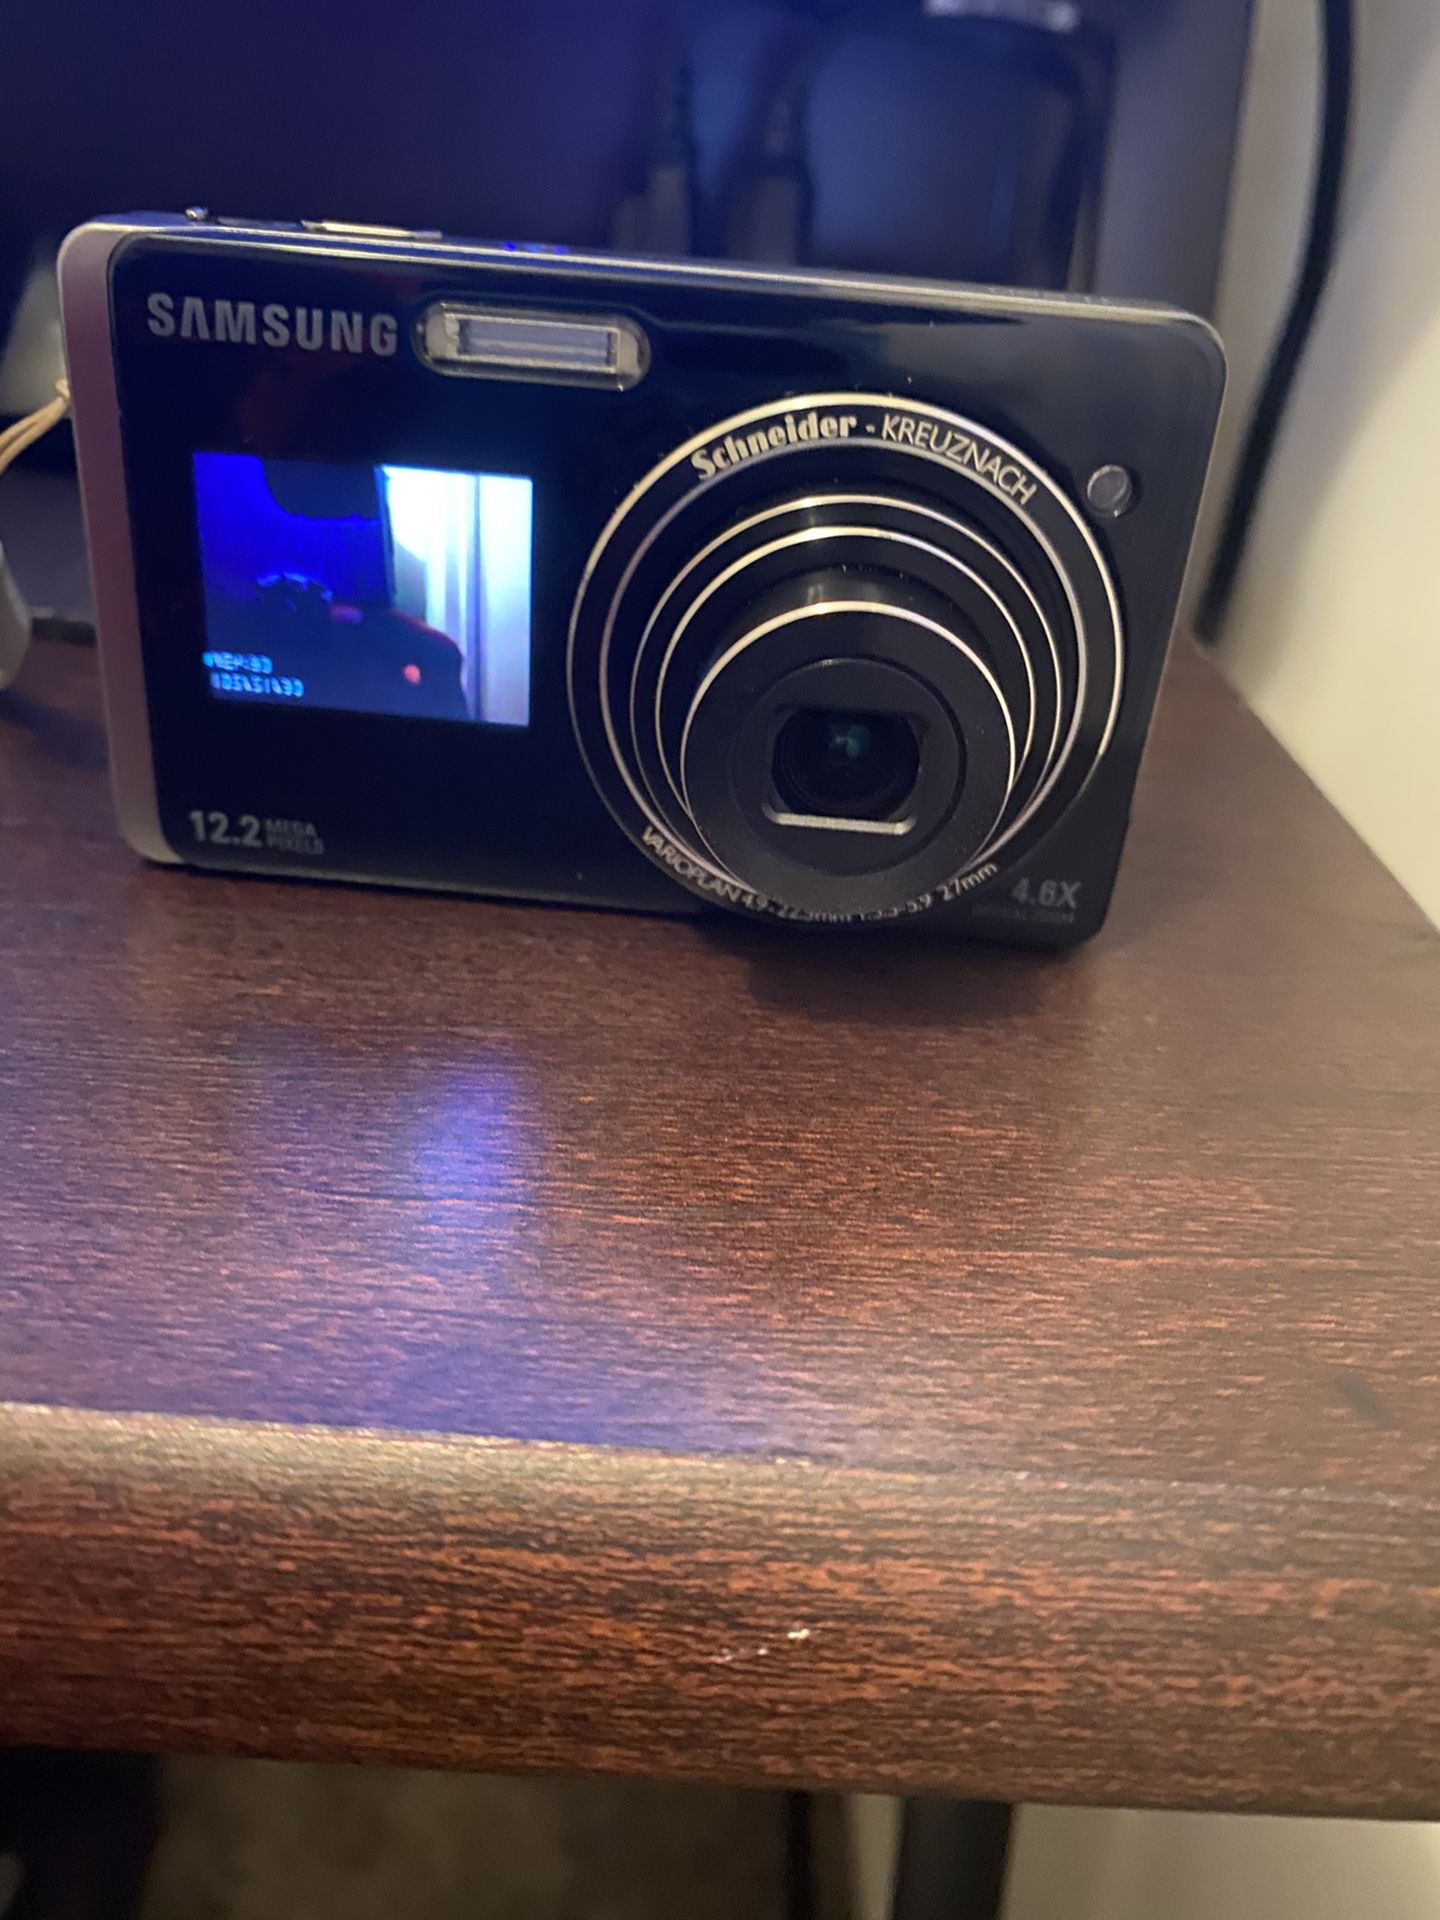 Samsung TL220 touchscreen camera